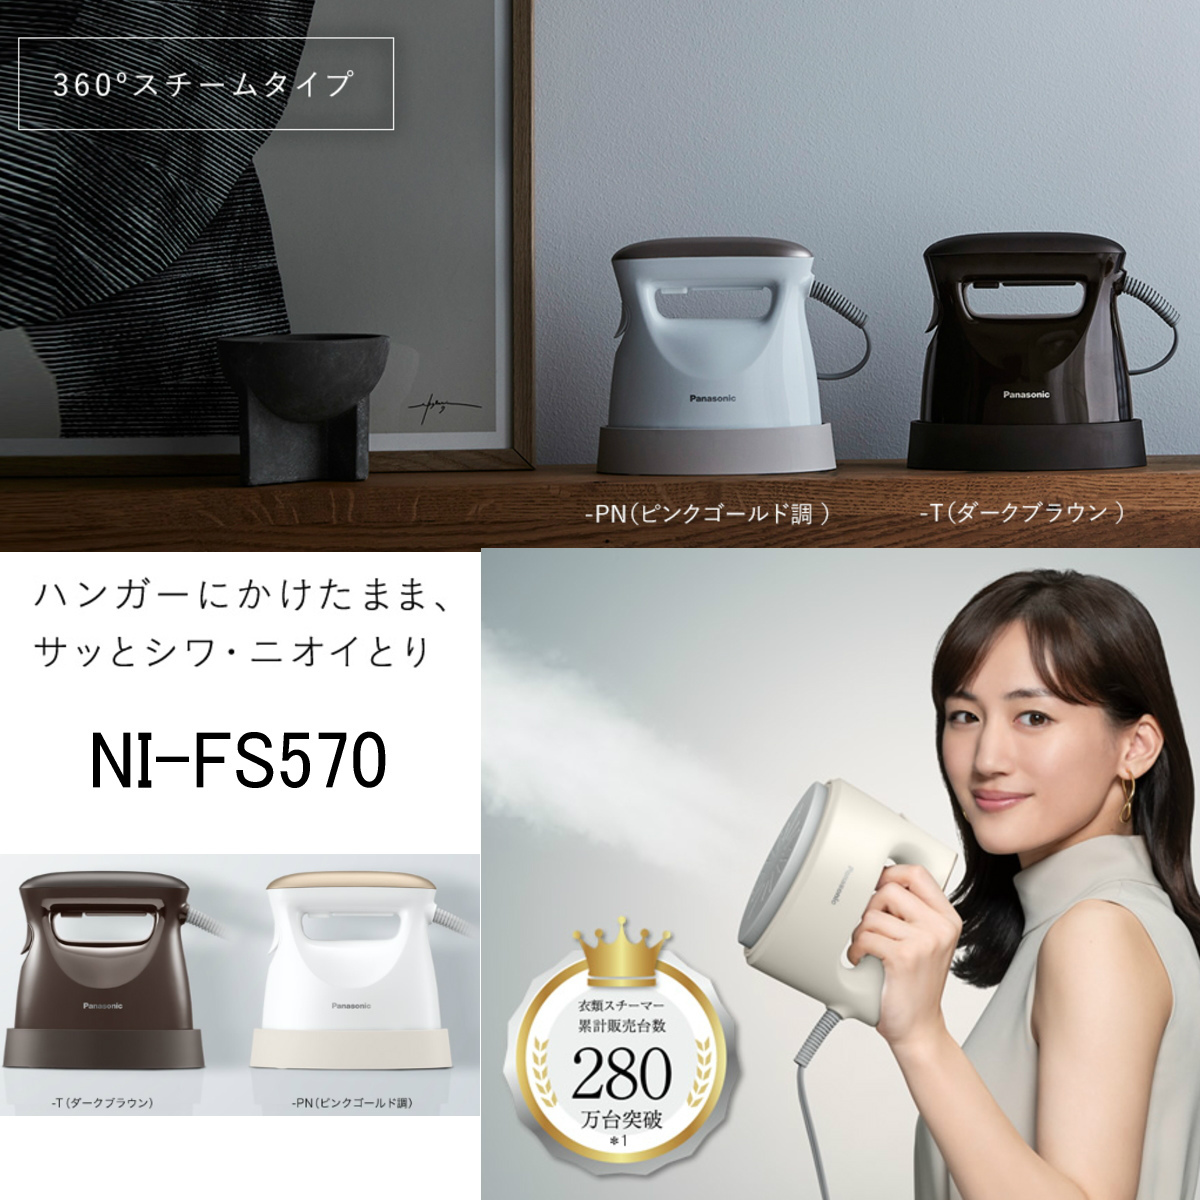 最高の品質 NI-FS570-PN 新品 未開封品 - アイロン - labelians.fr